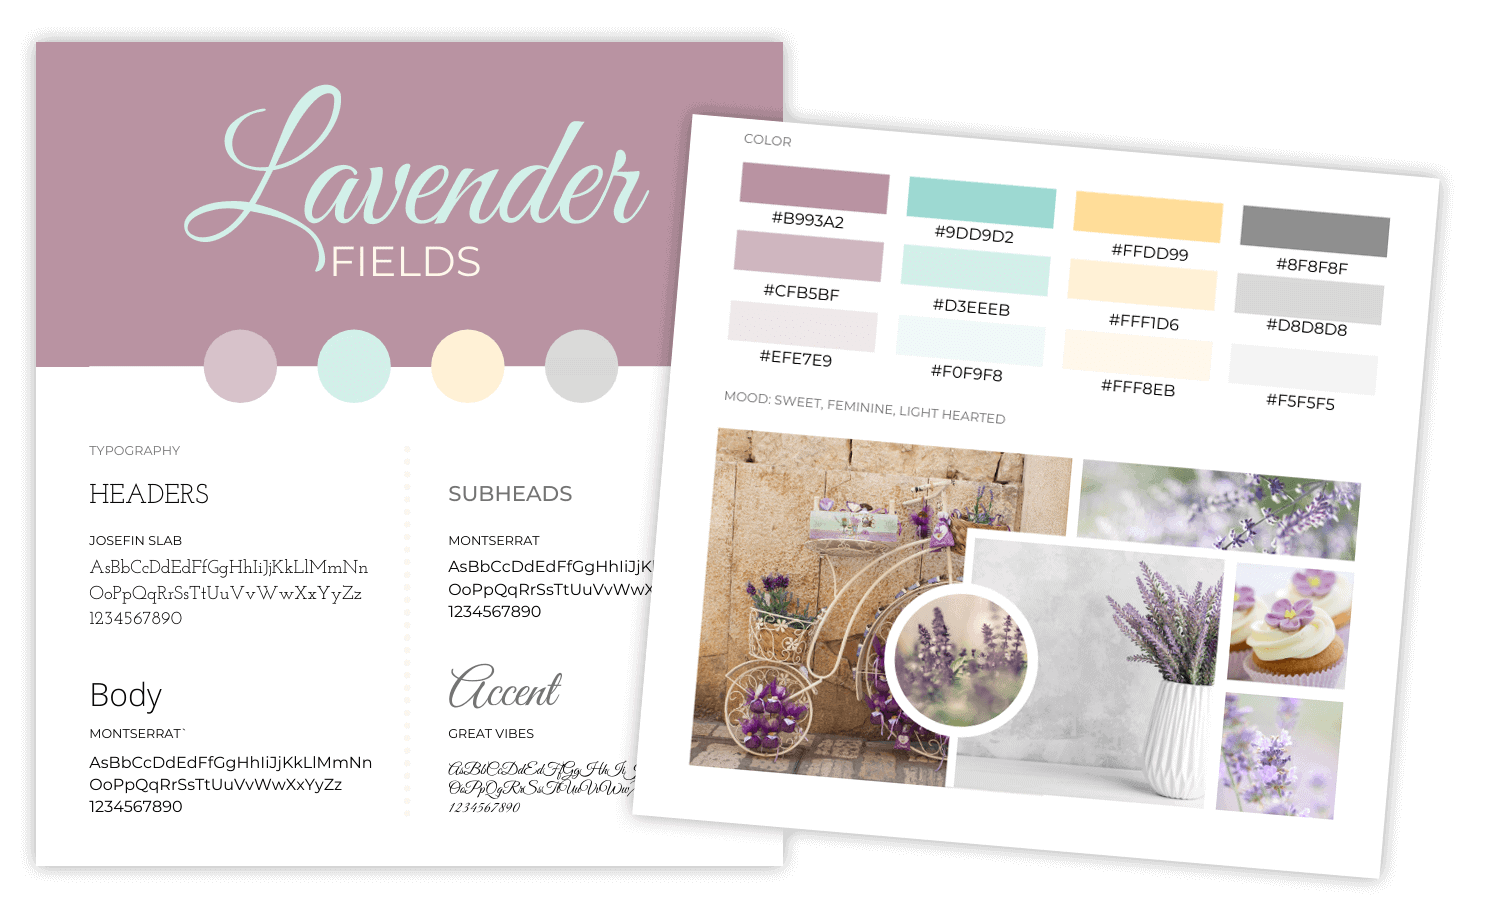 Lavender Fields brand board